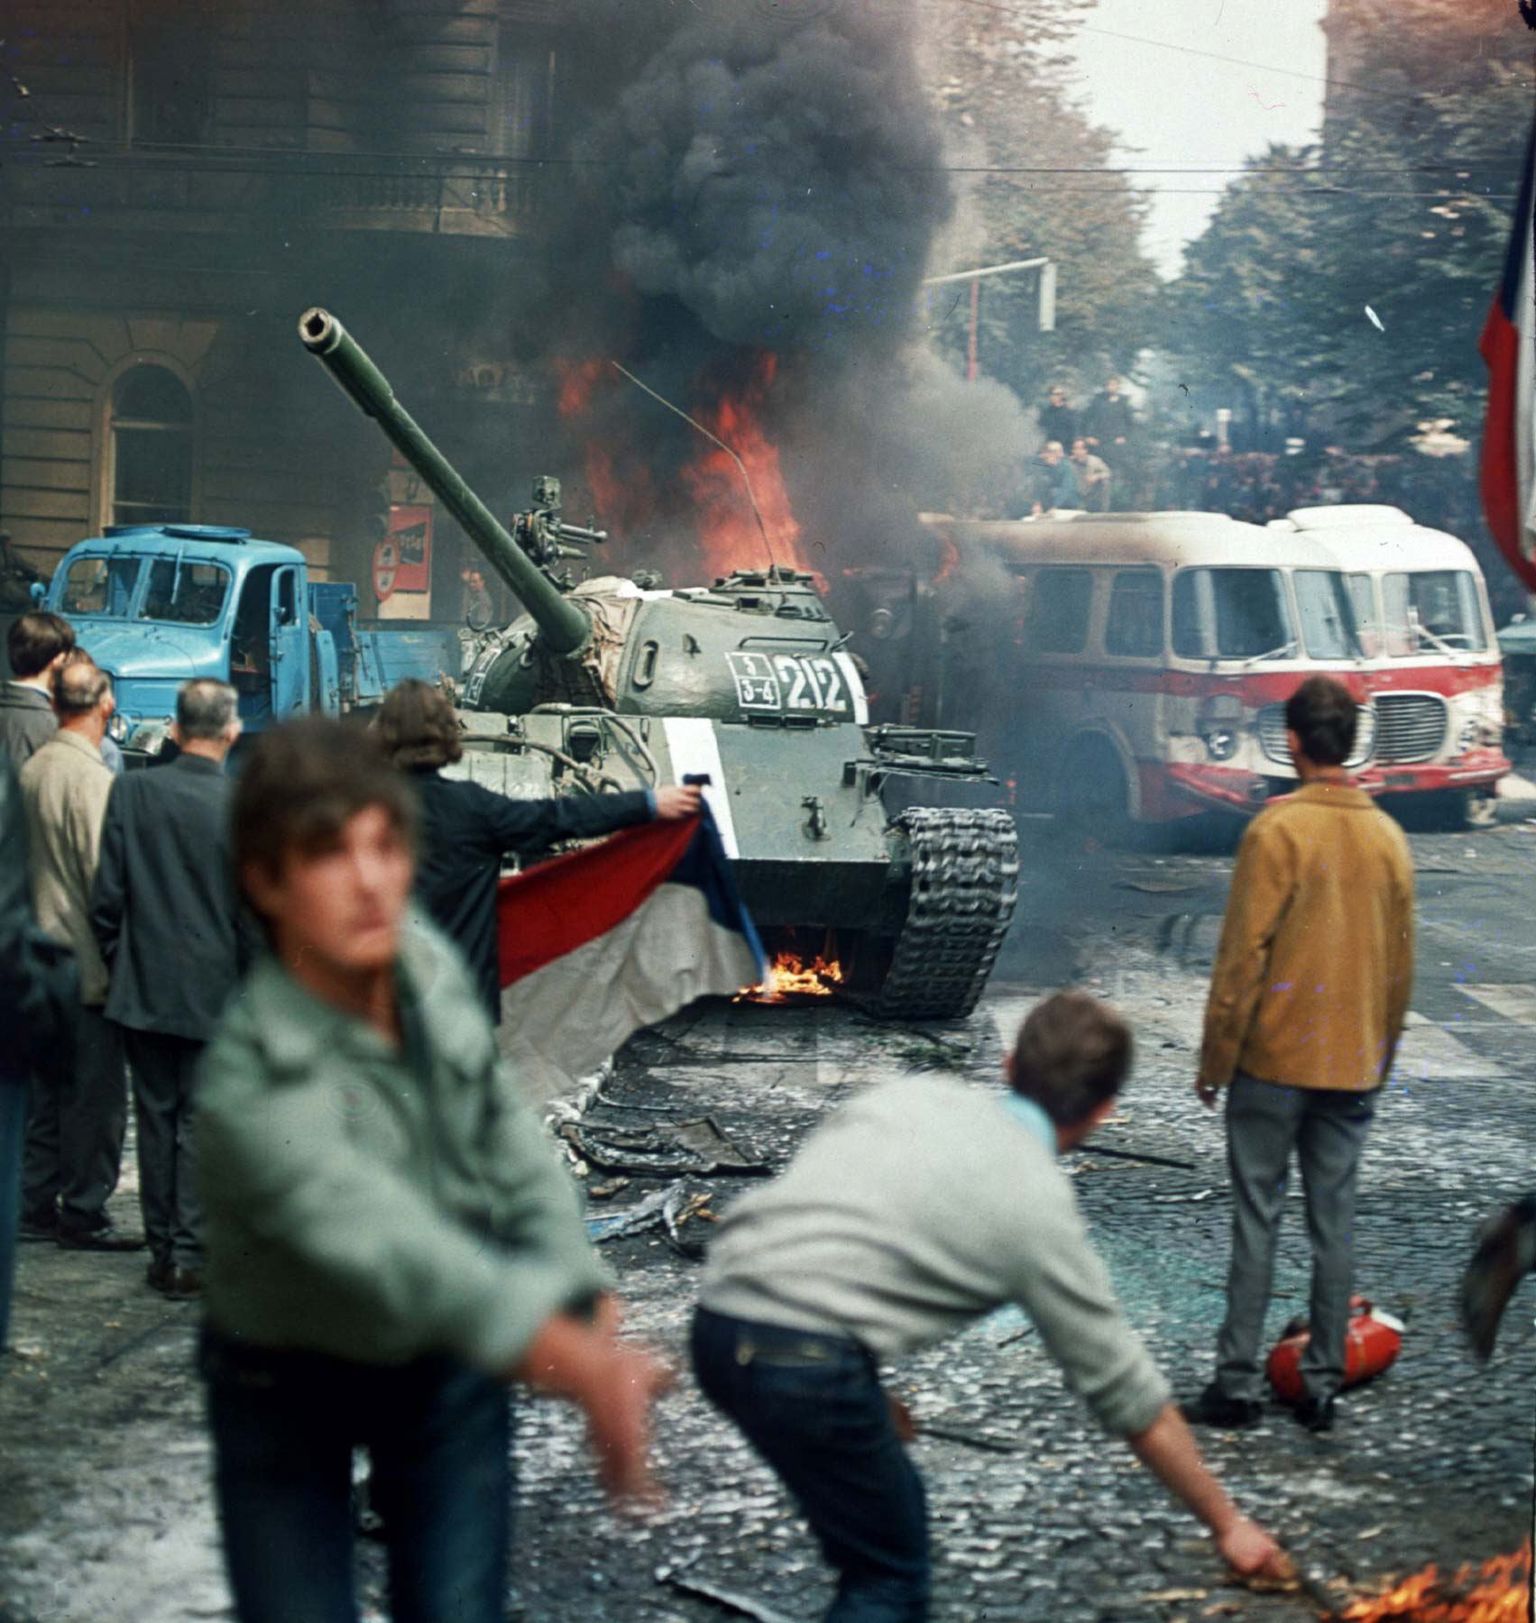 Praha elanikud lehvitavad Tšehhoslovakkia lippu ja proovivad põlevate tõrvikutega peatada nõukogude tanki 21. augustil viiskümmend aastat tagasi. Nõukogude Venemaa juhitud invasioon purustas Praha kevadena tuntud reformid endises Tšehhoslovakkias.